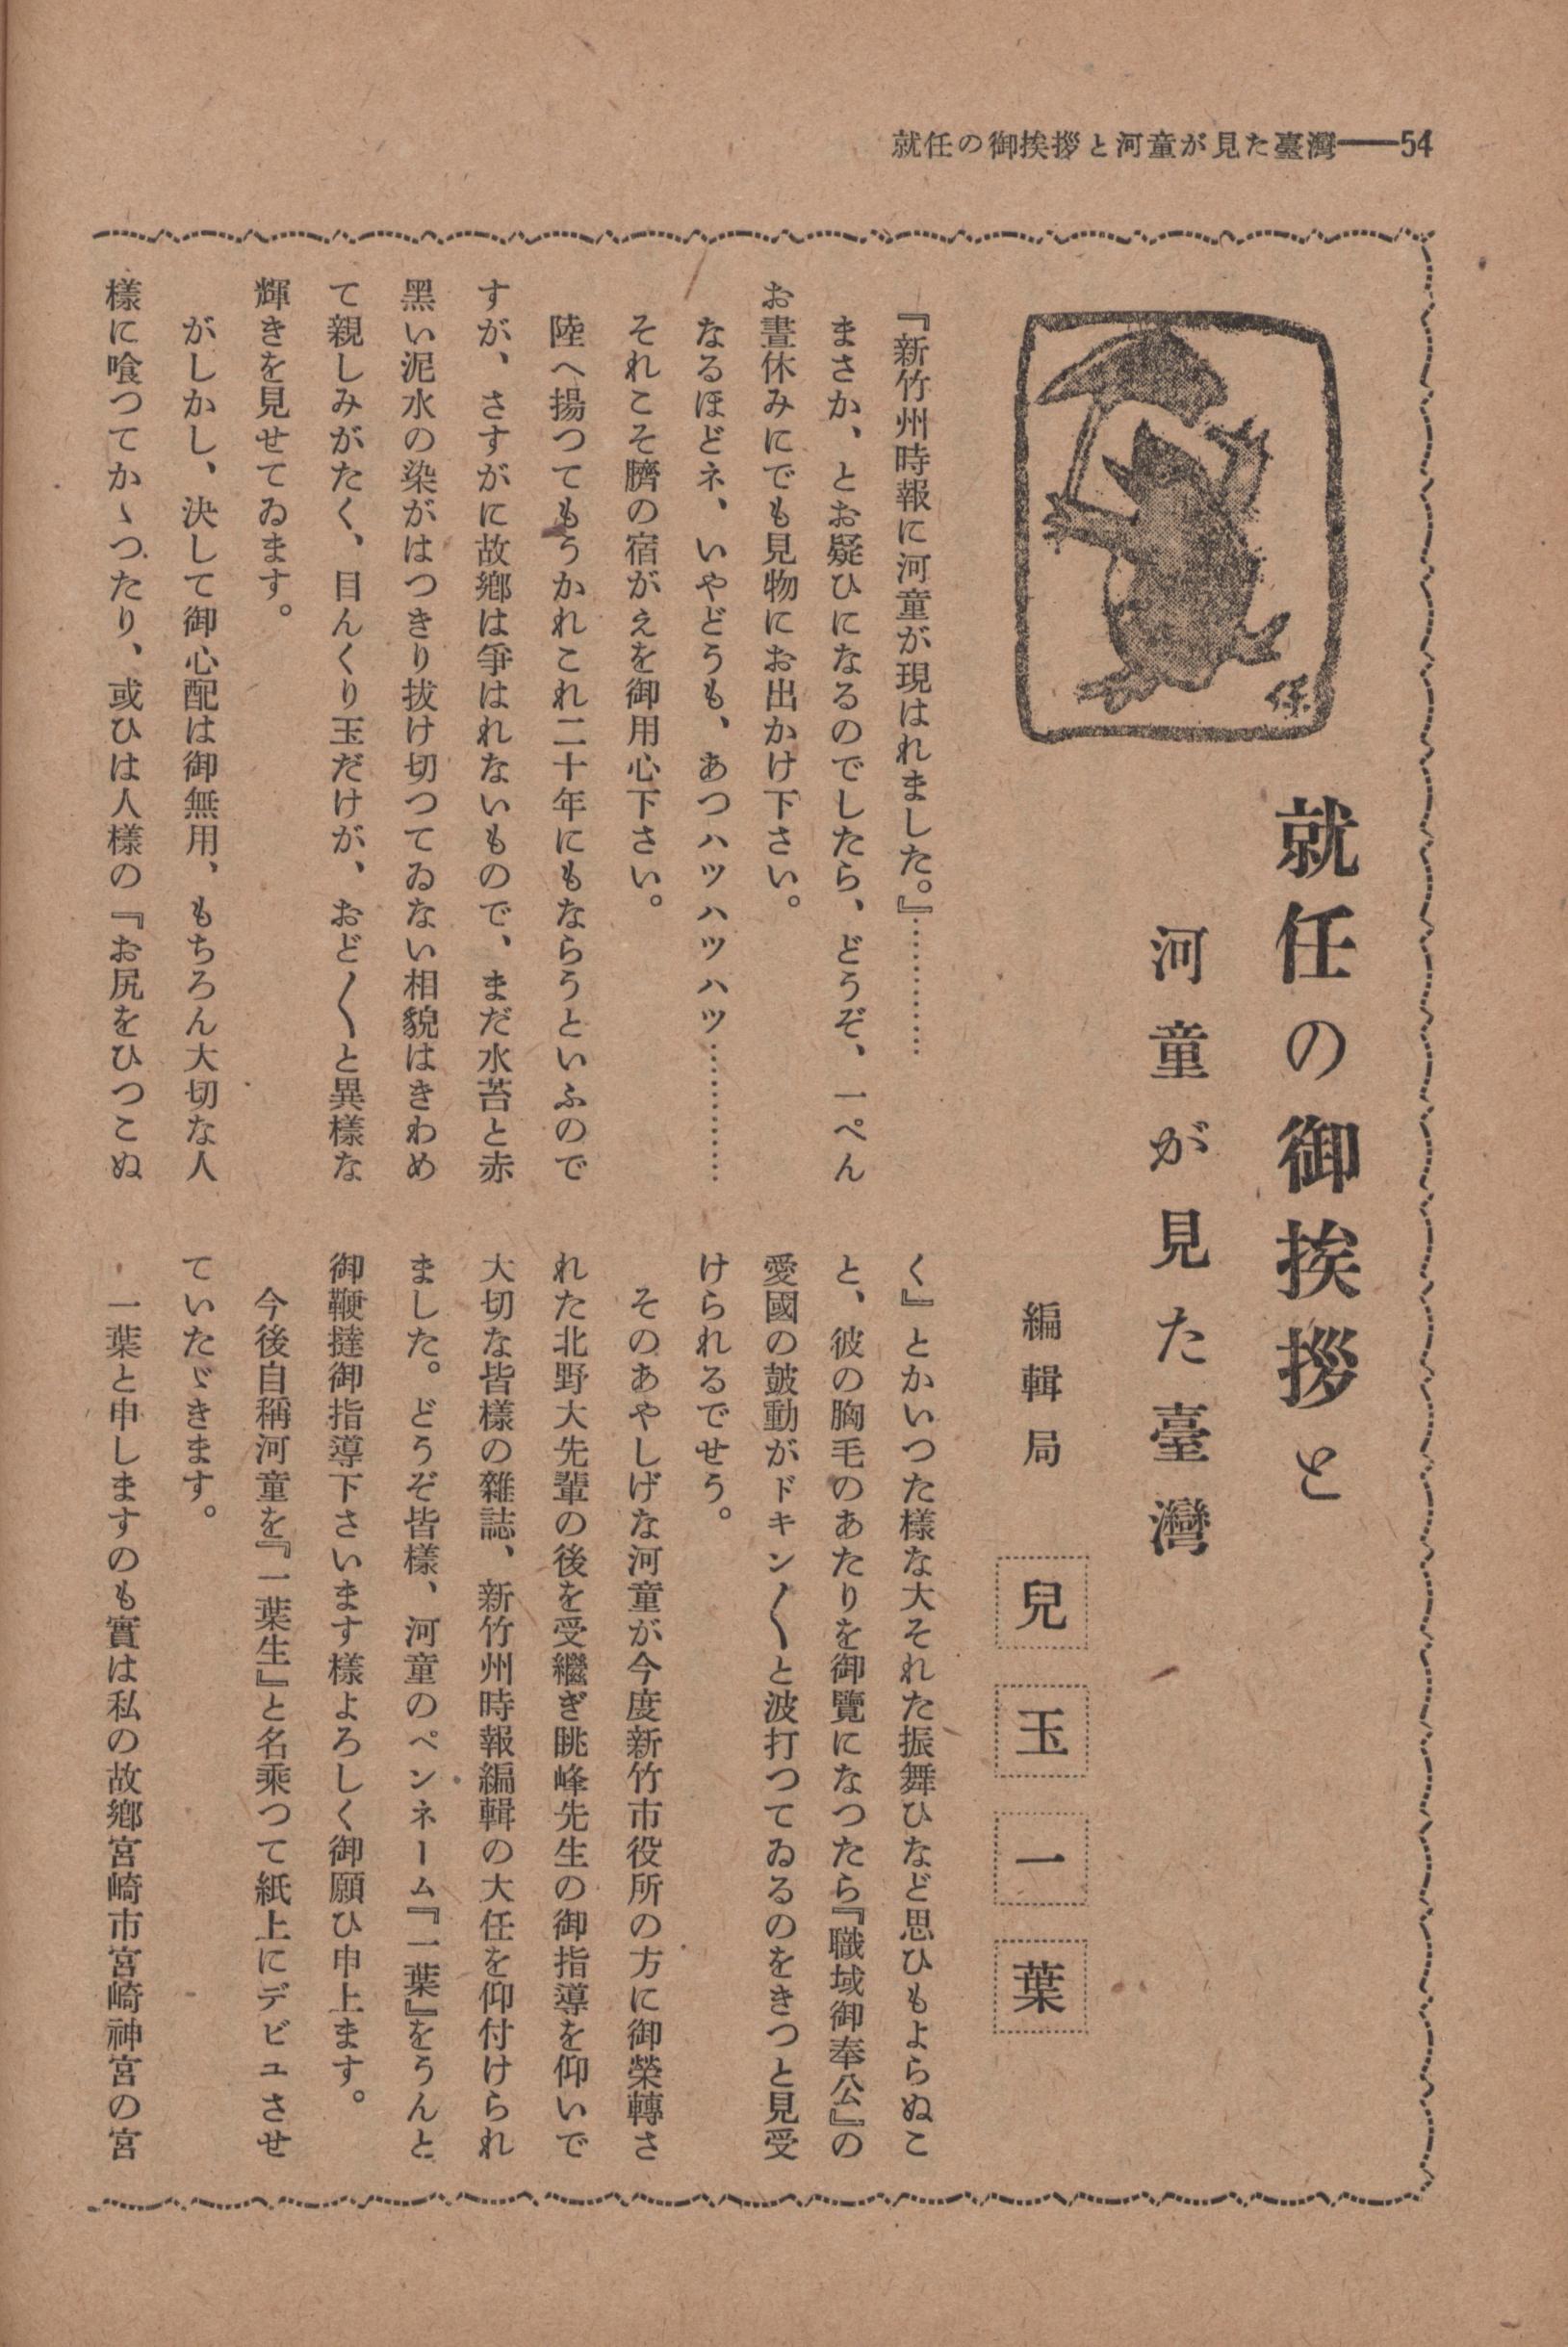 新竹州時報第四十九號-就職問候與河童所見的臺灣